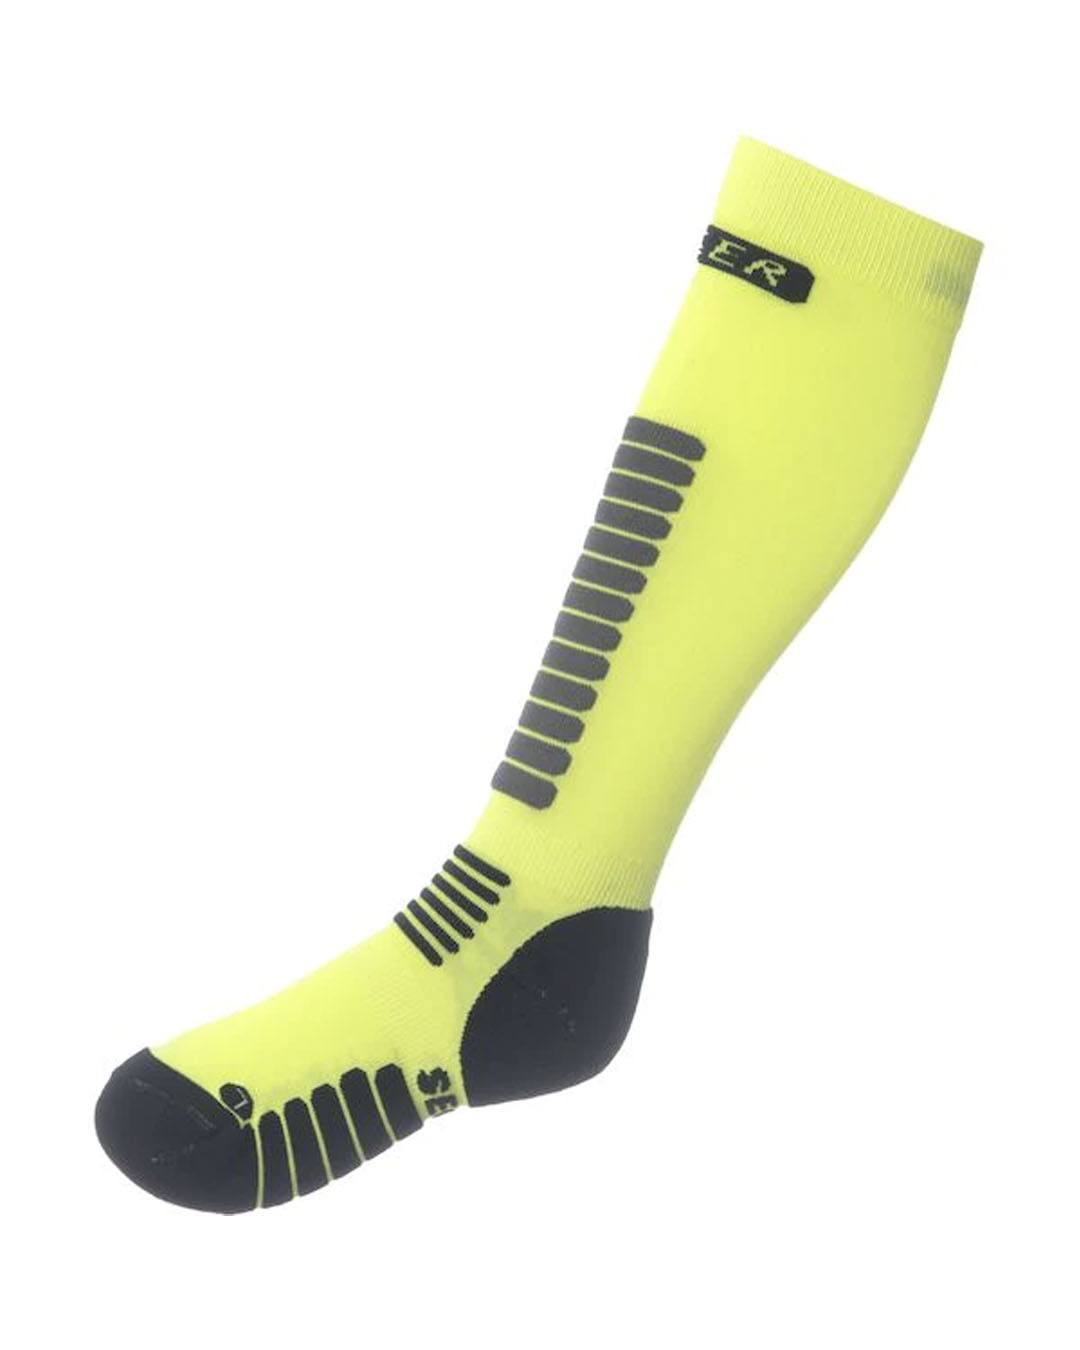 Seger Yellow Ski Socks 